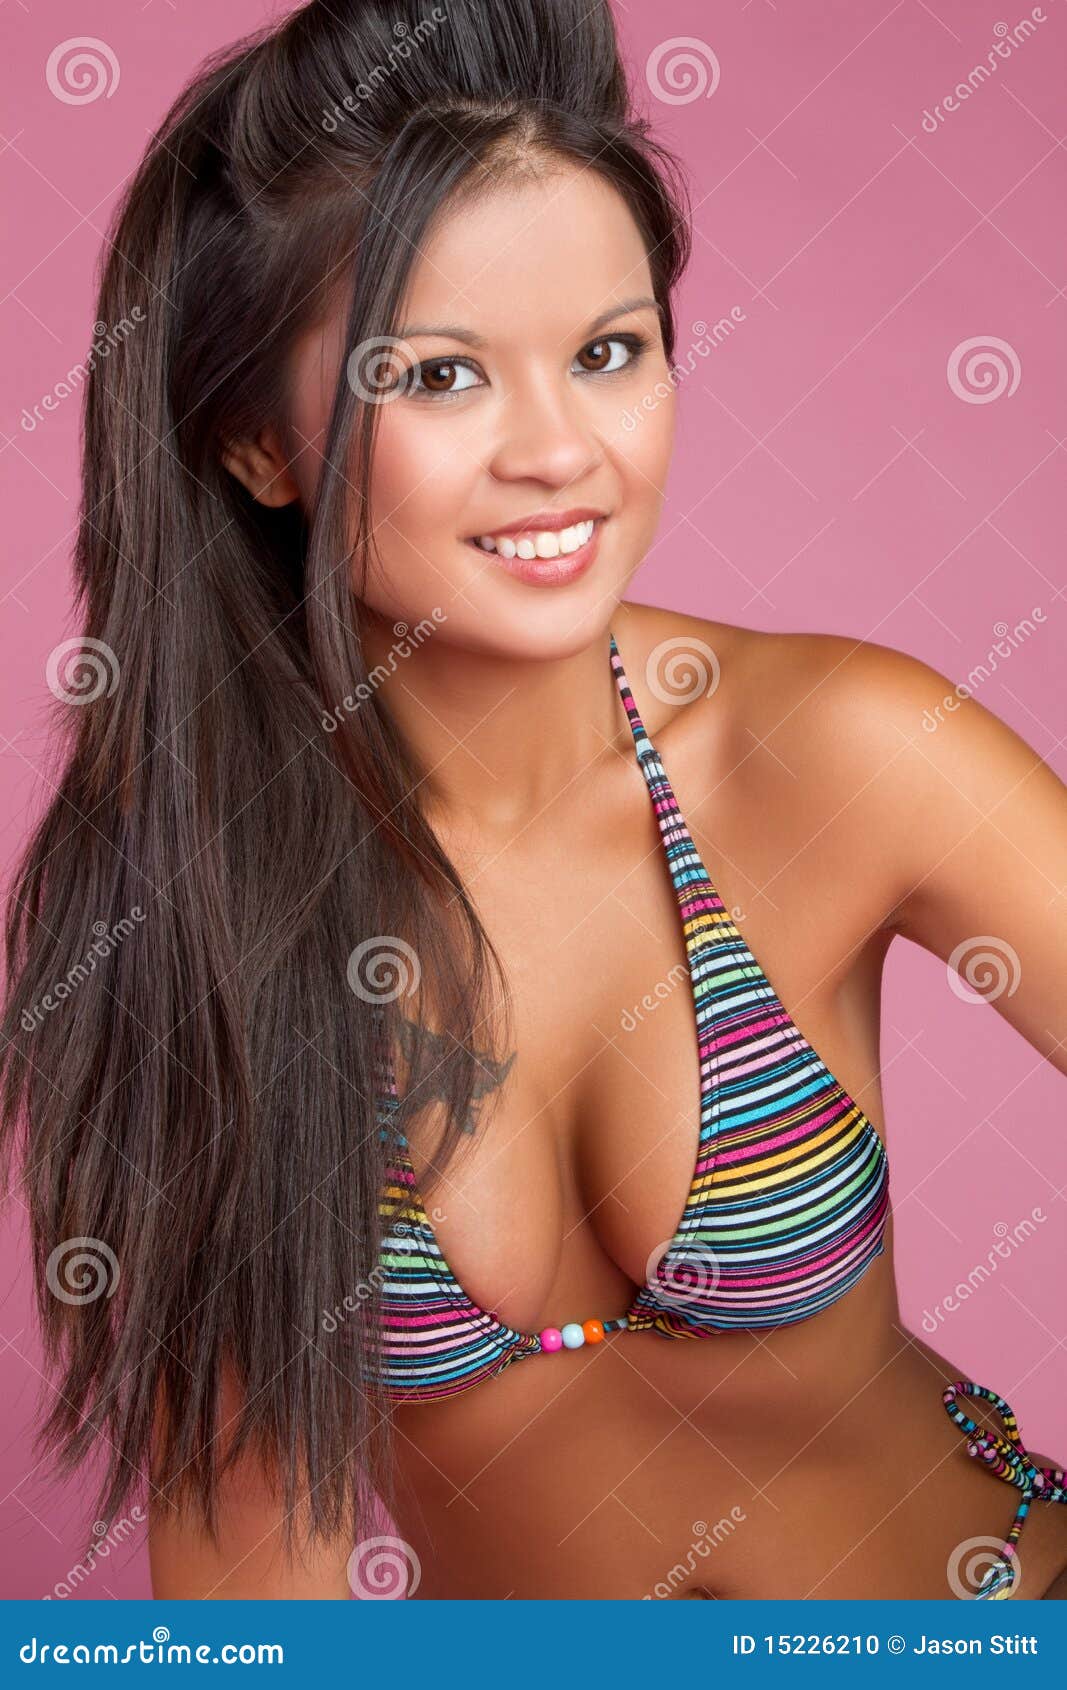 Best of Asian women in bikinis